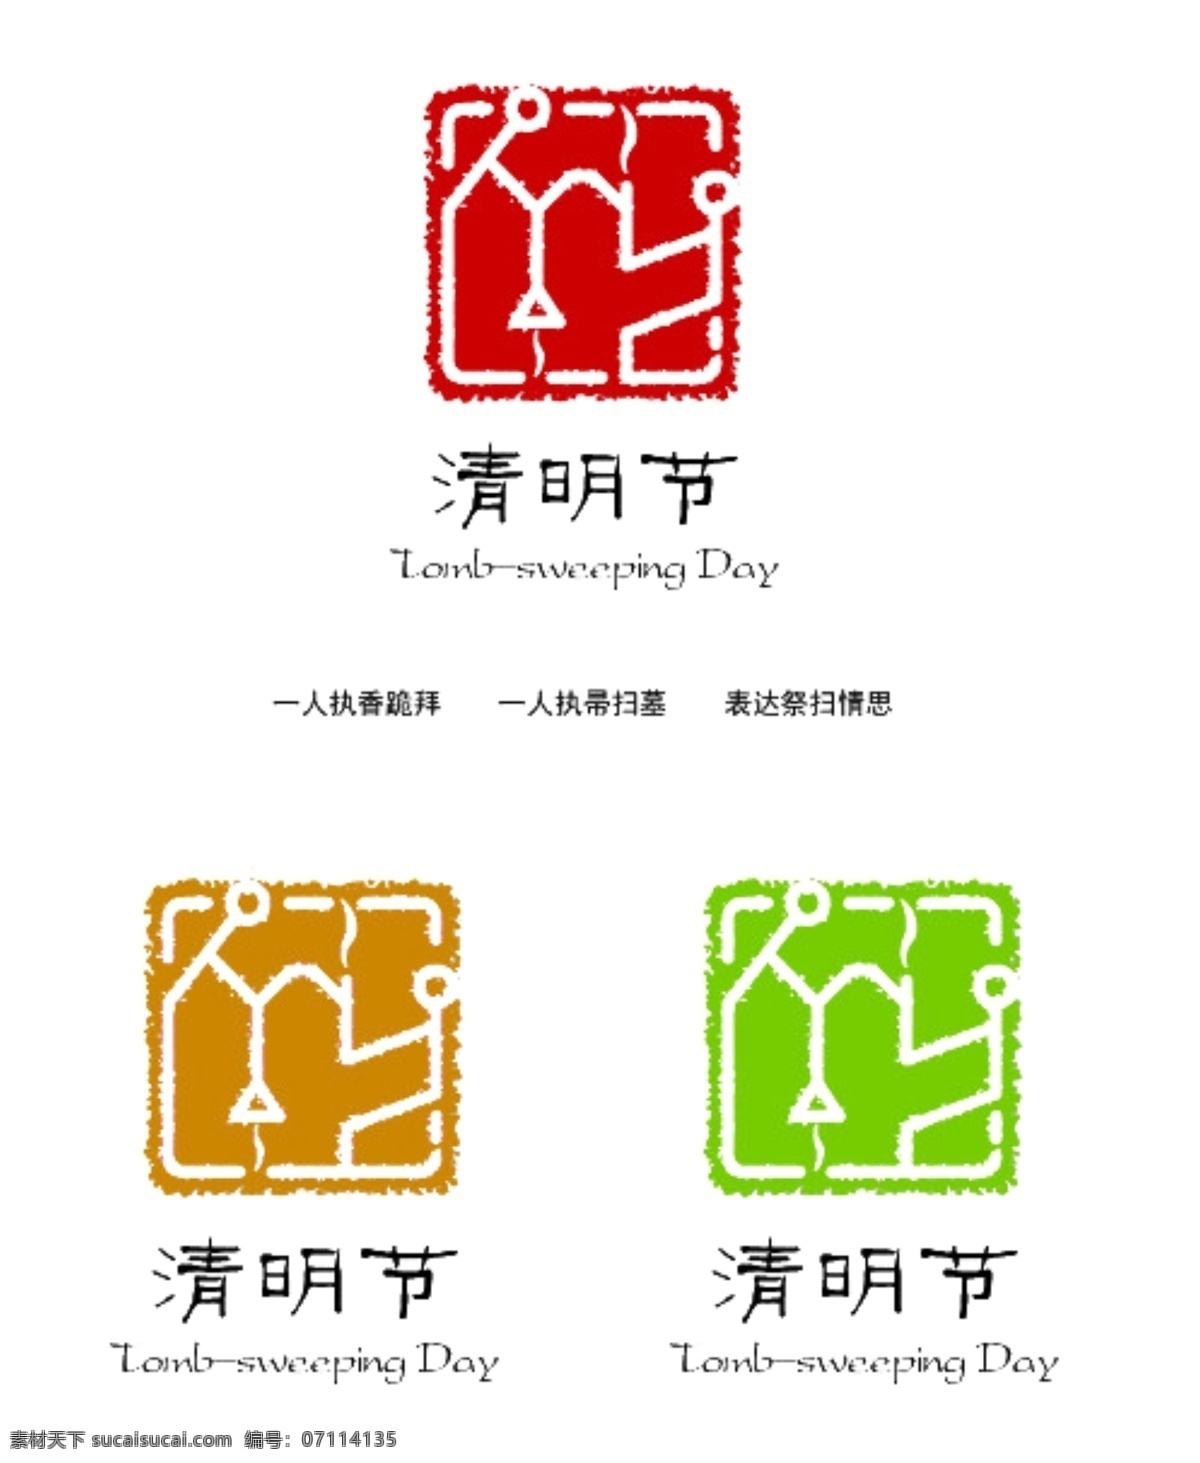 中国 传统节日 清明节 logo 节日 节日素材 其他节日